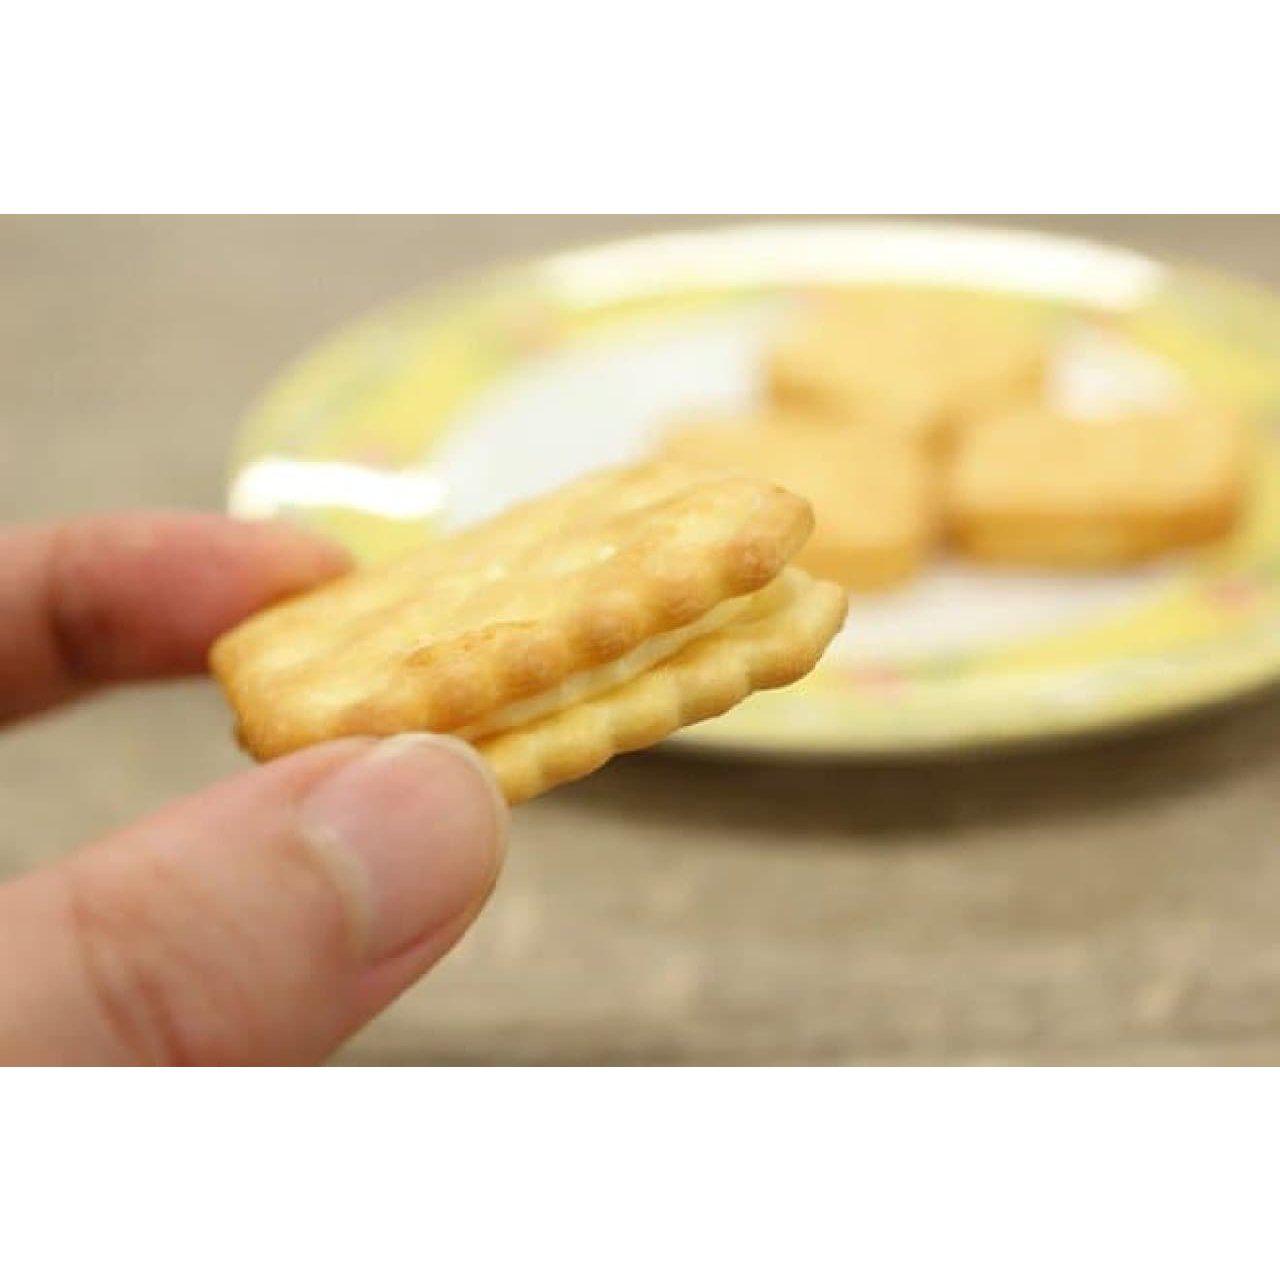 Yamazaki Lemon Pack Lemon Cream Filled Sandwich Crackers (Pack of 3)